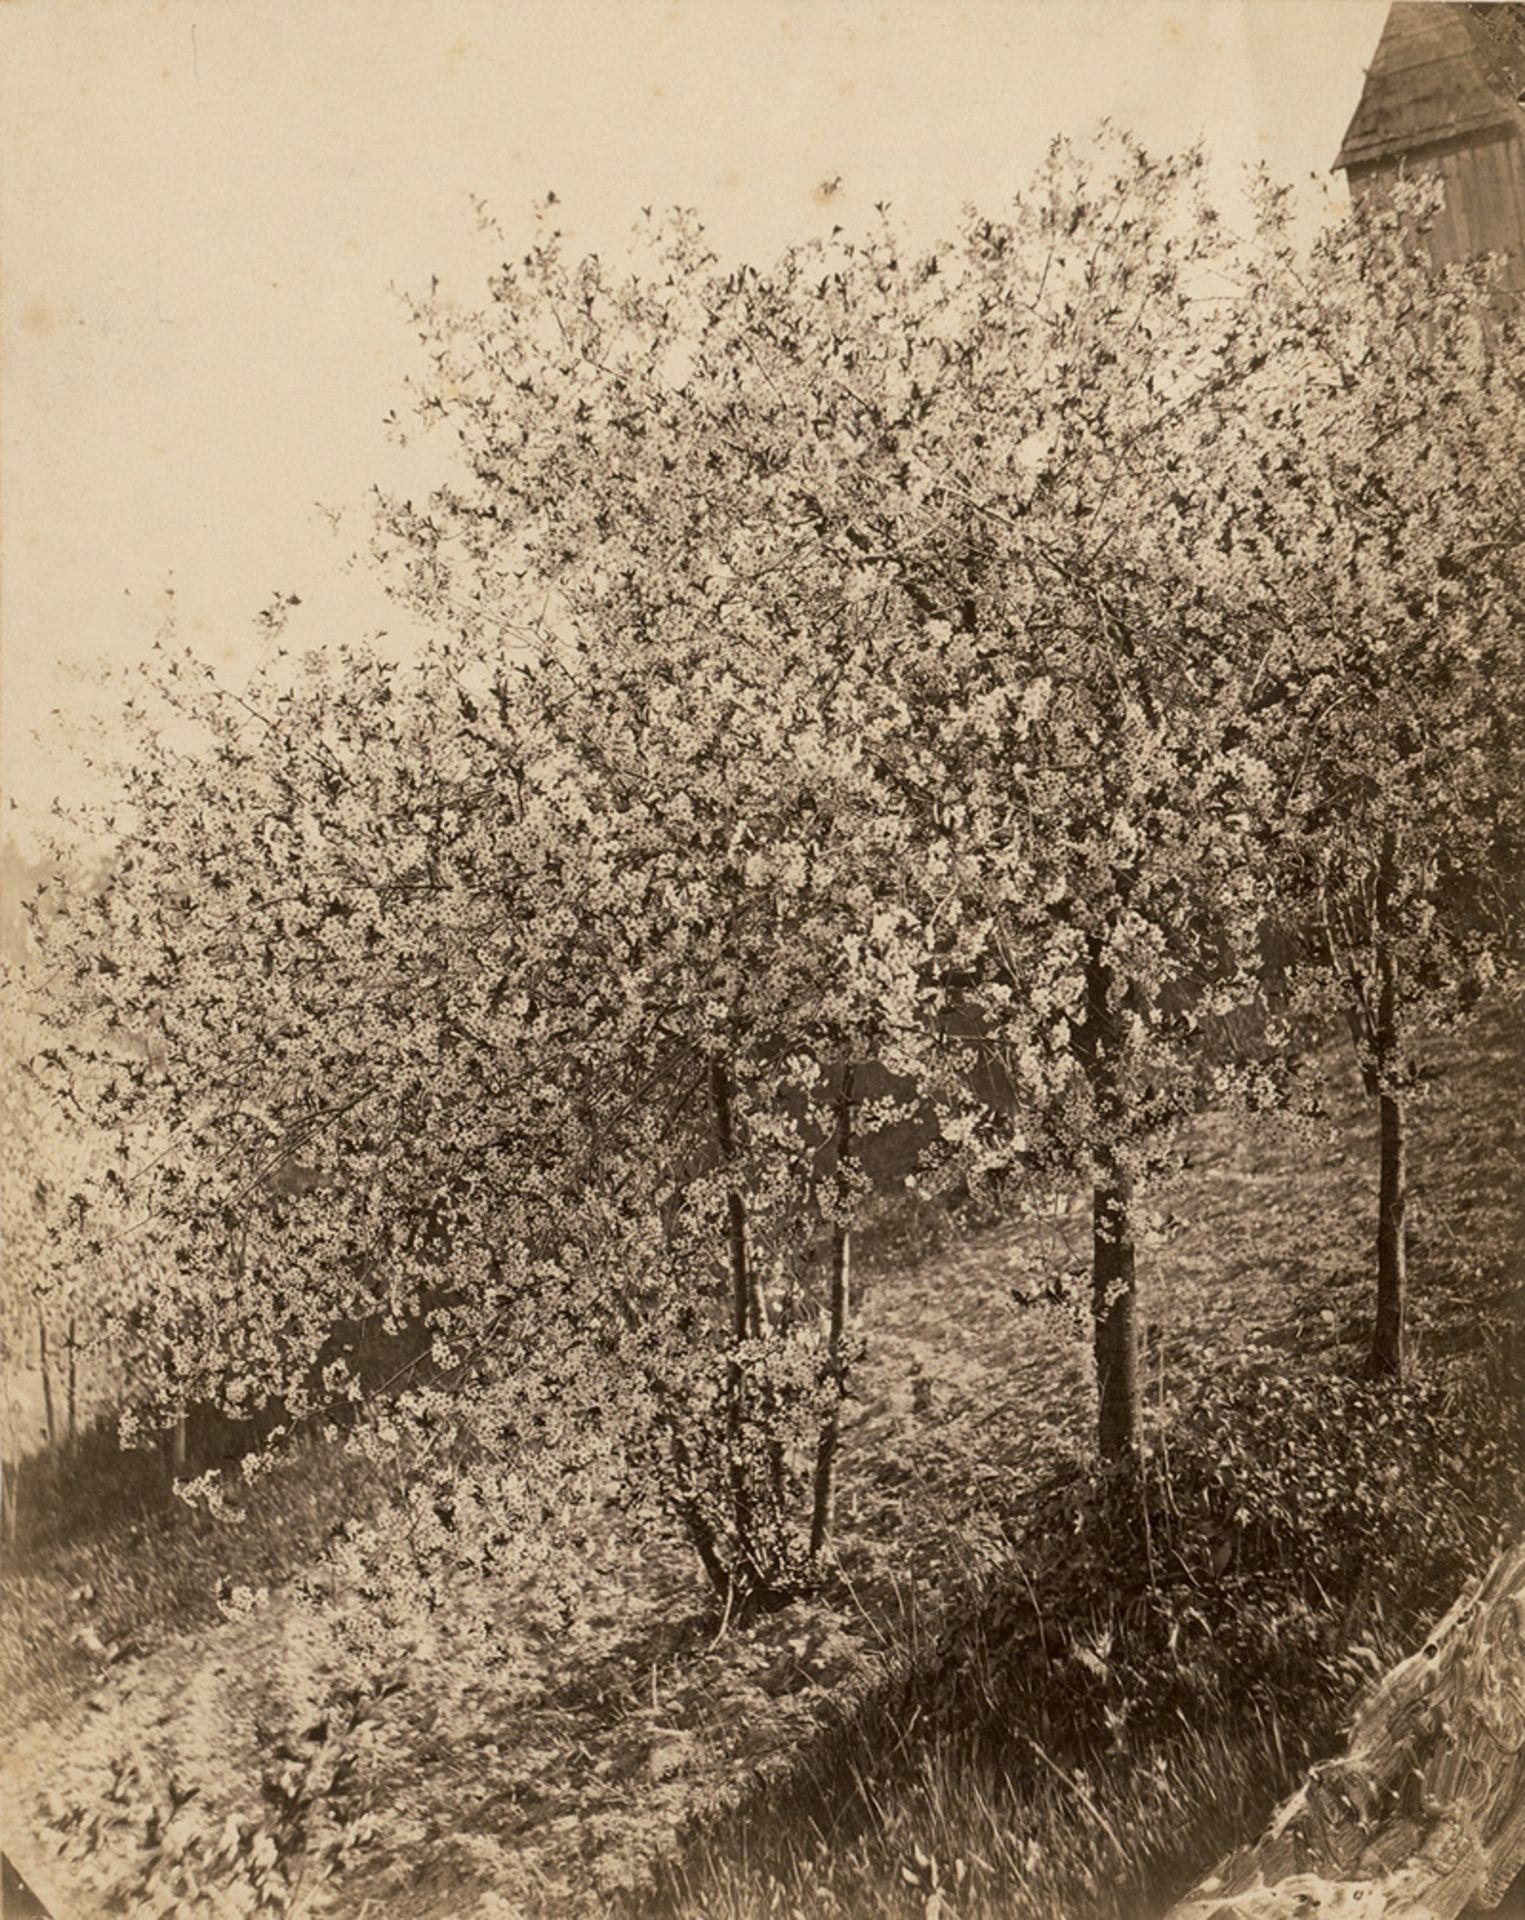 Kotzsch, August: Kotzschhausecke (cherry blossom trees)